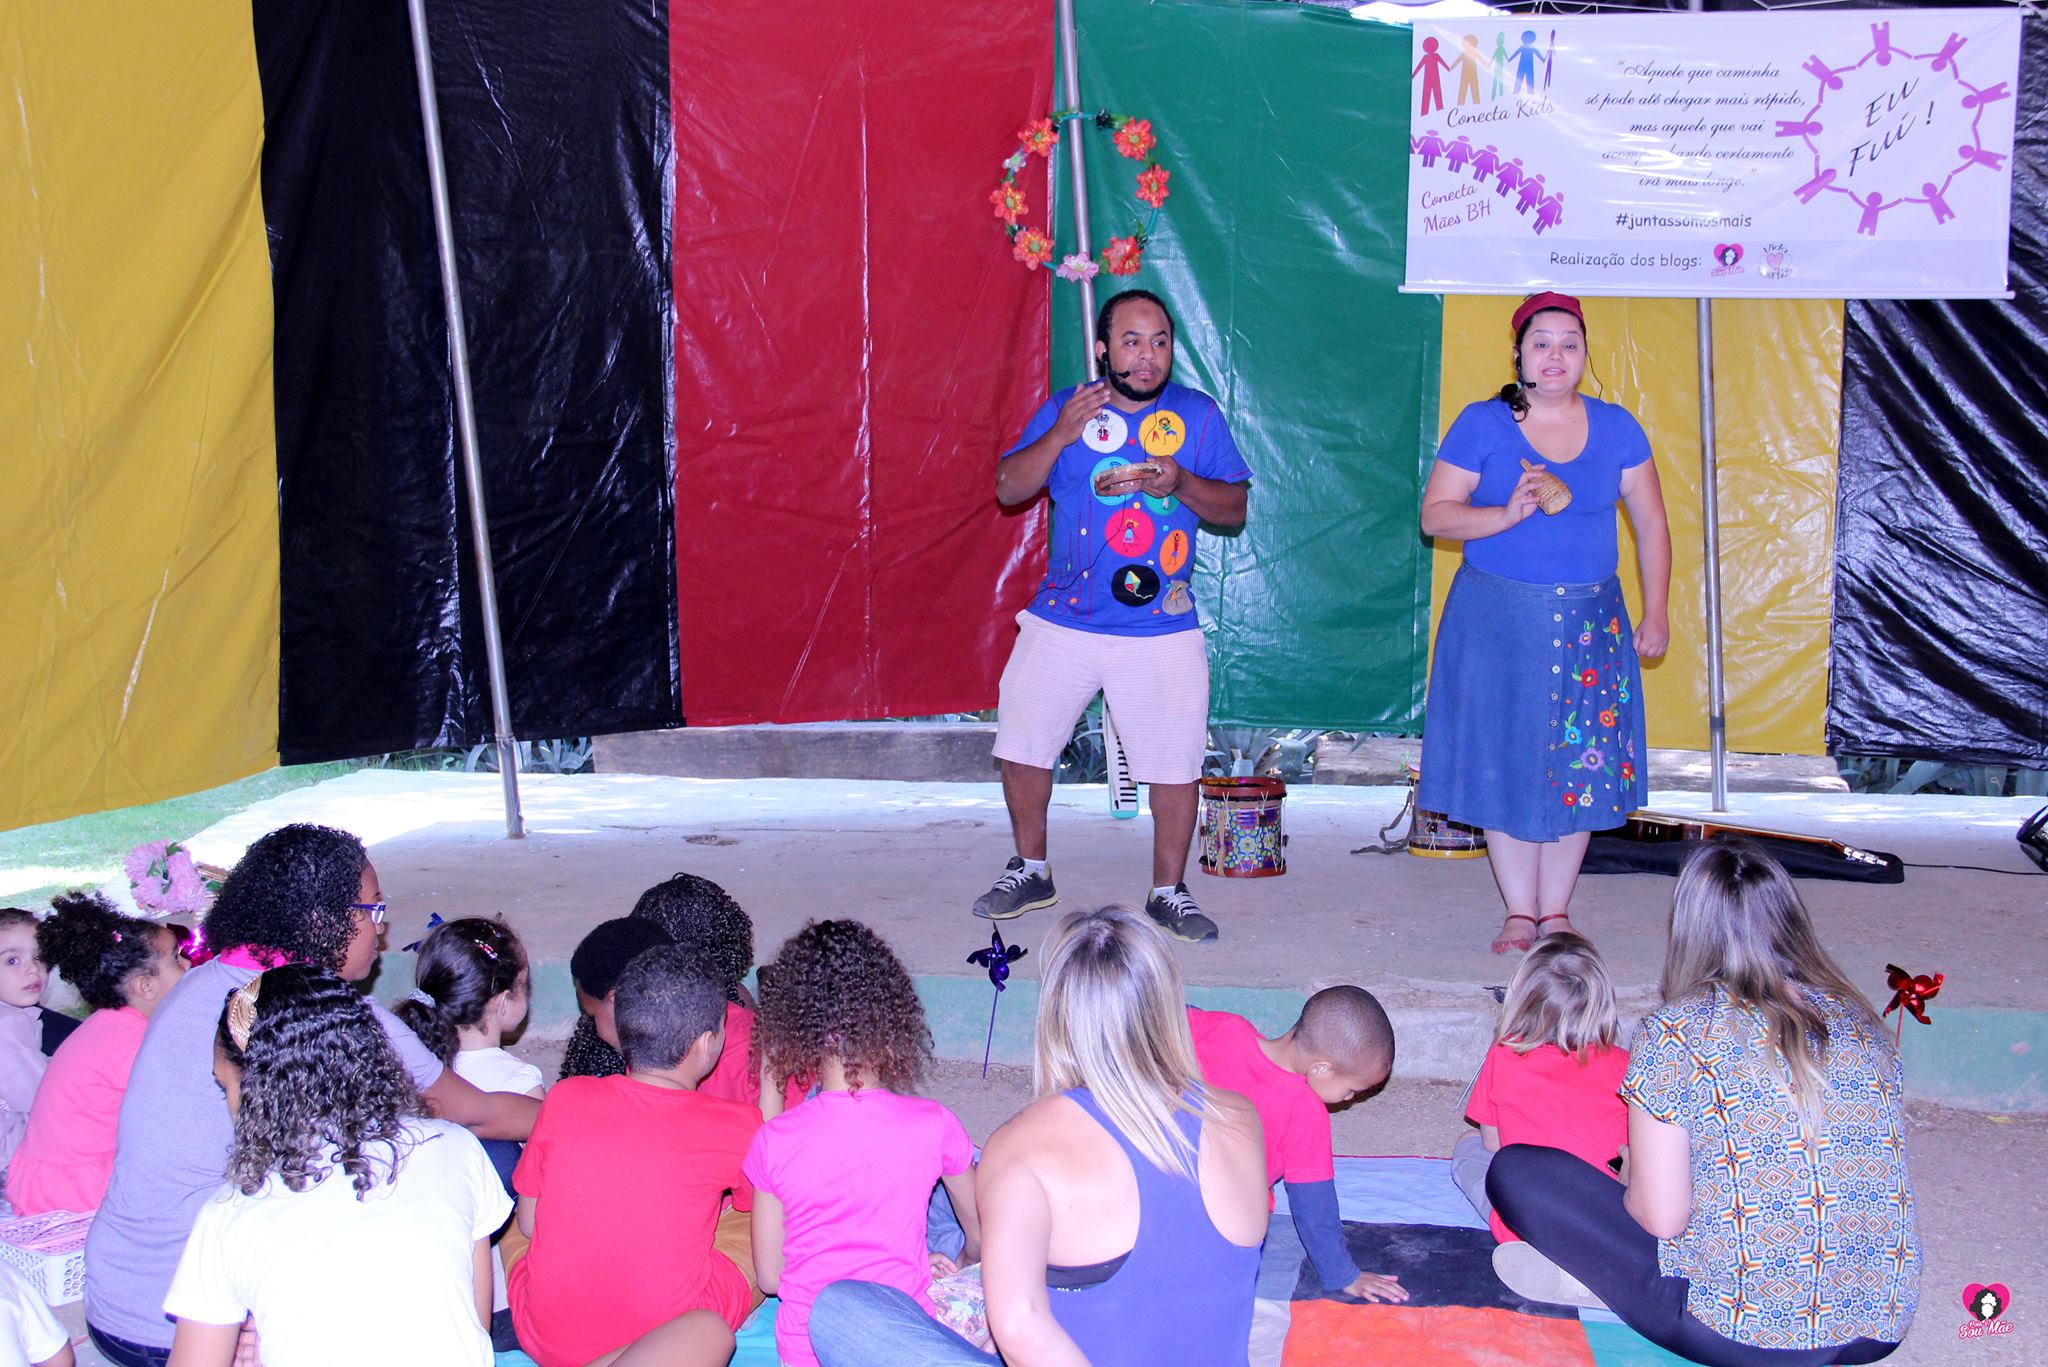 Um casal vestido com roupas azuis está num palco com lona colorida atrás, se apresentando a um grupo de crianças